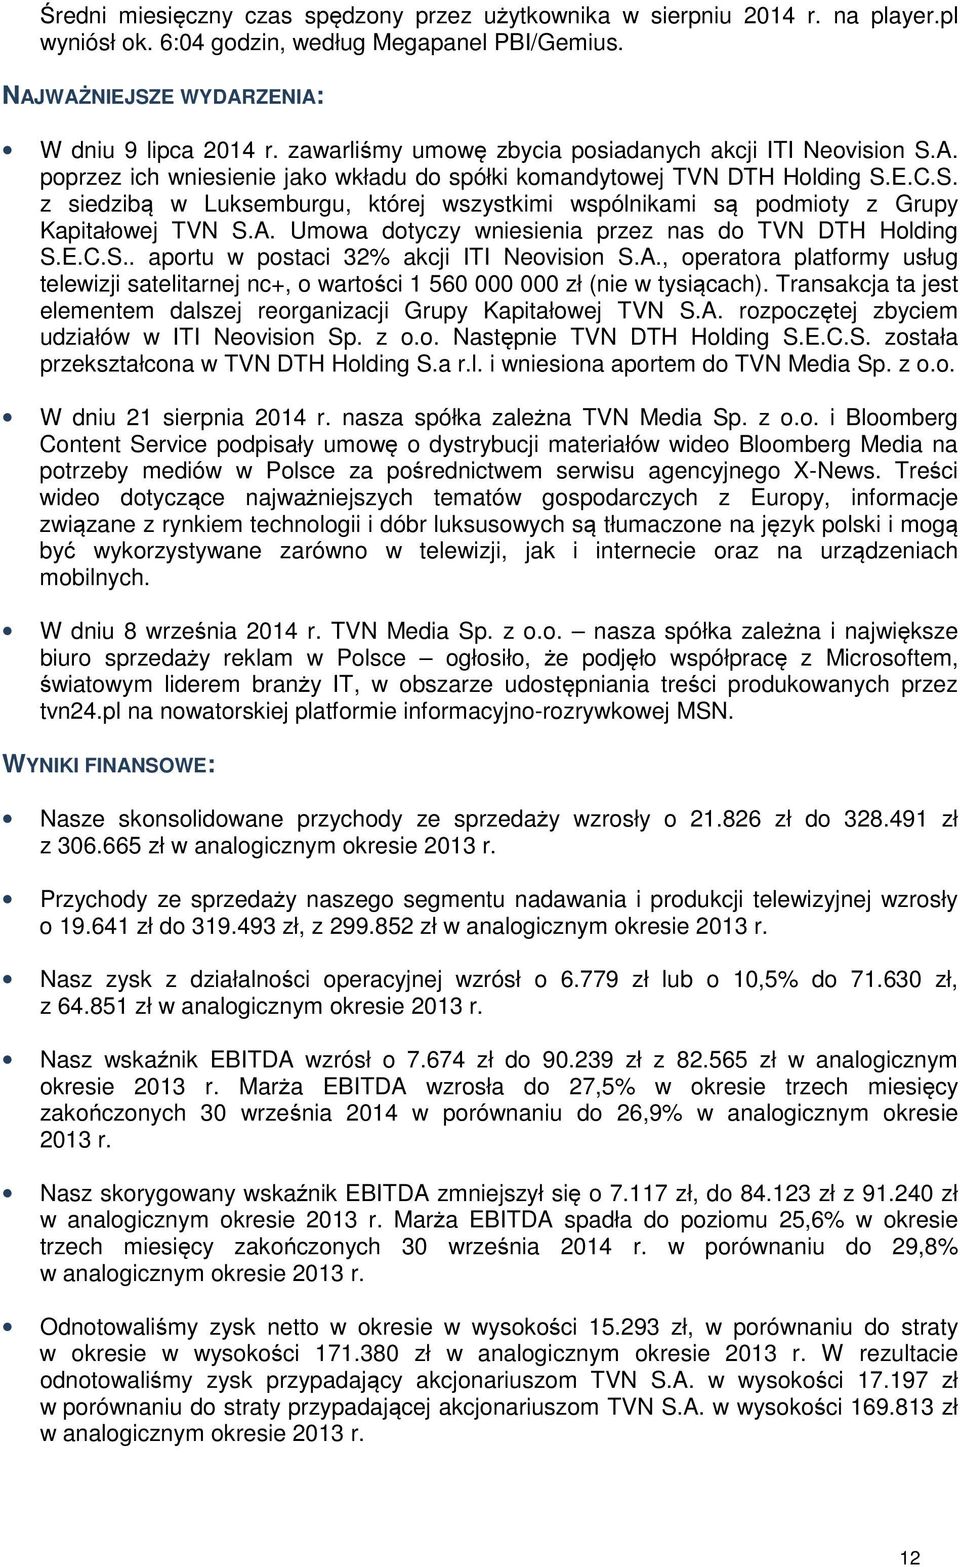 A. Umowa dotyczy wniesienia przez nas do TVN DTH Holding S.E.C.S.. aportu w postaci 32% akcji ITI Neovision S.A., operatora platformy usług telewizji satelitarnej nc+, o wartości 1 560 000 000 zł (nie w tysiącach).